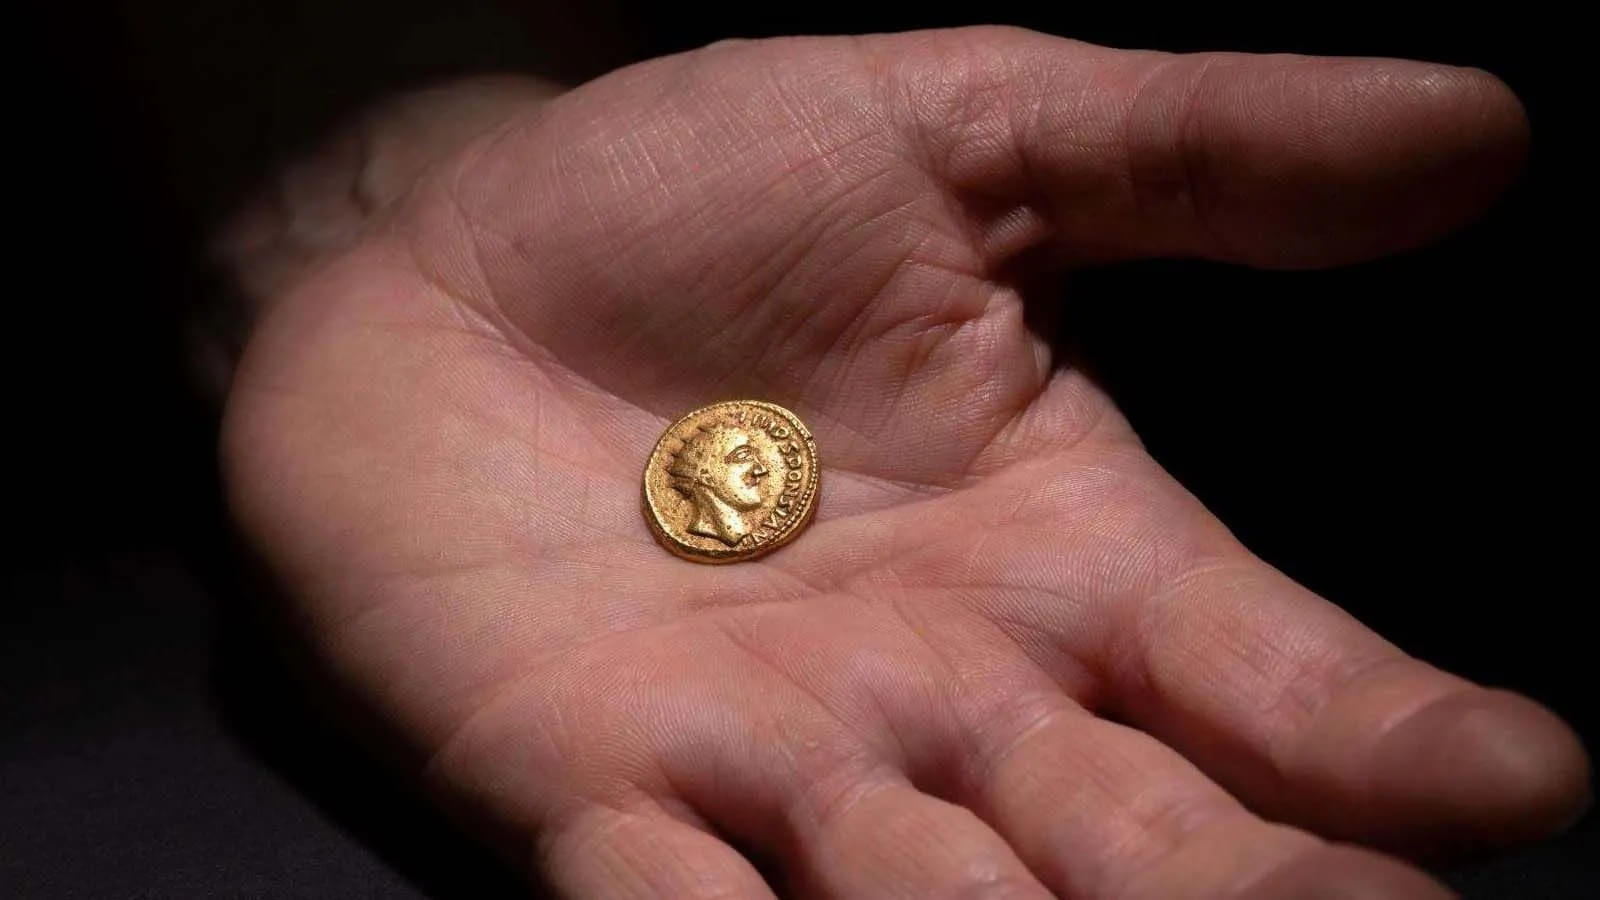 Фальшивая монета древности оказалась настоящей  на ней изображена забытая историческая личность